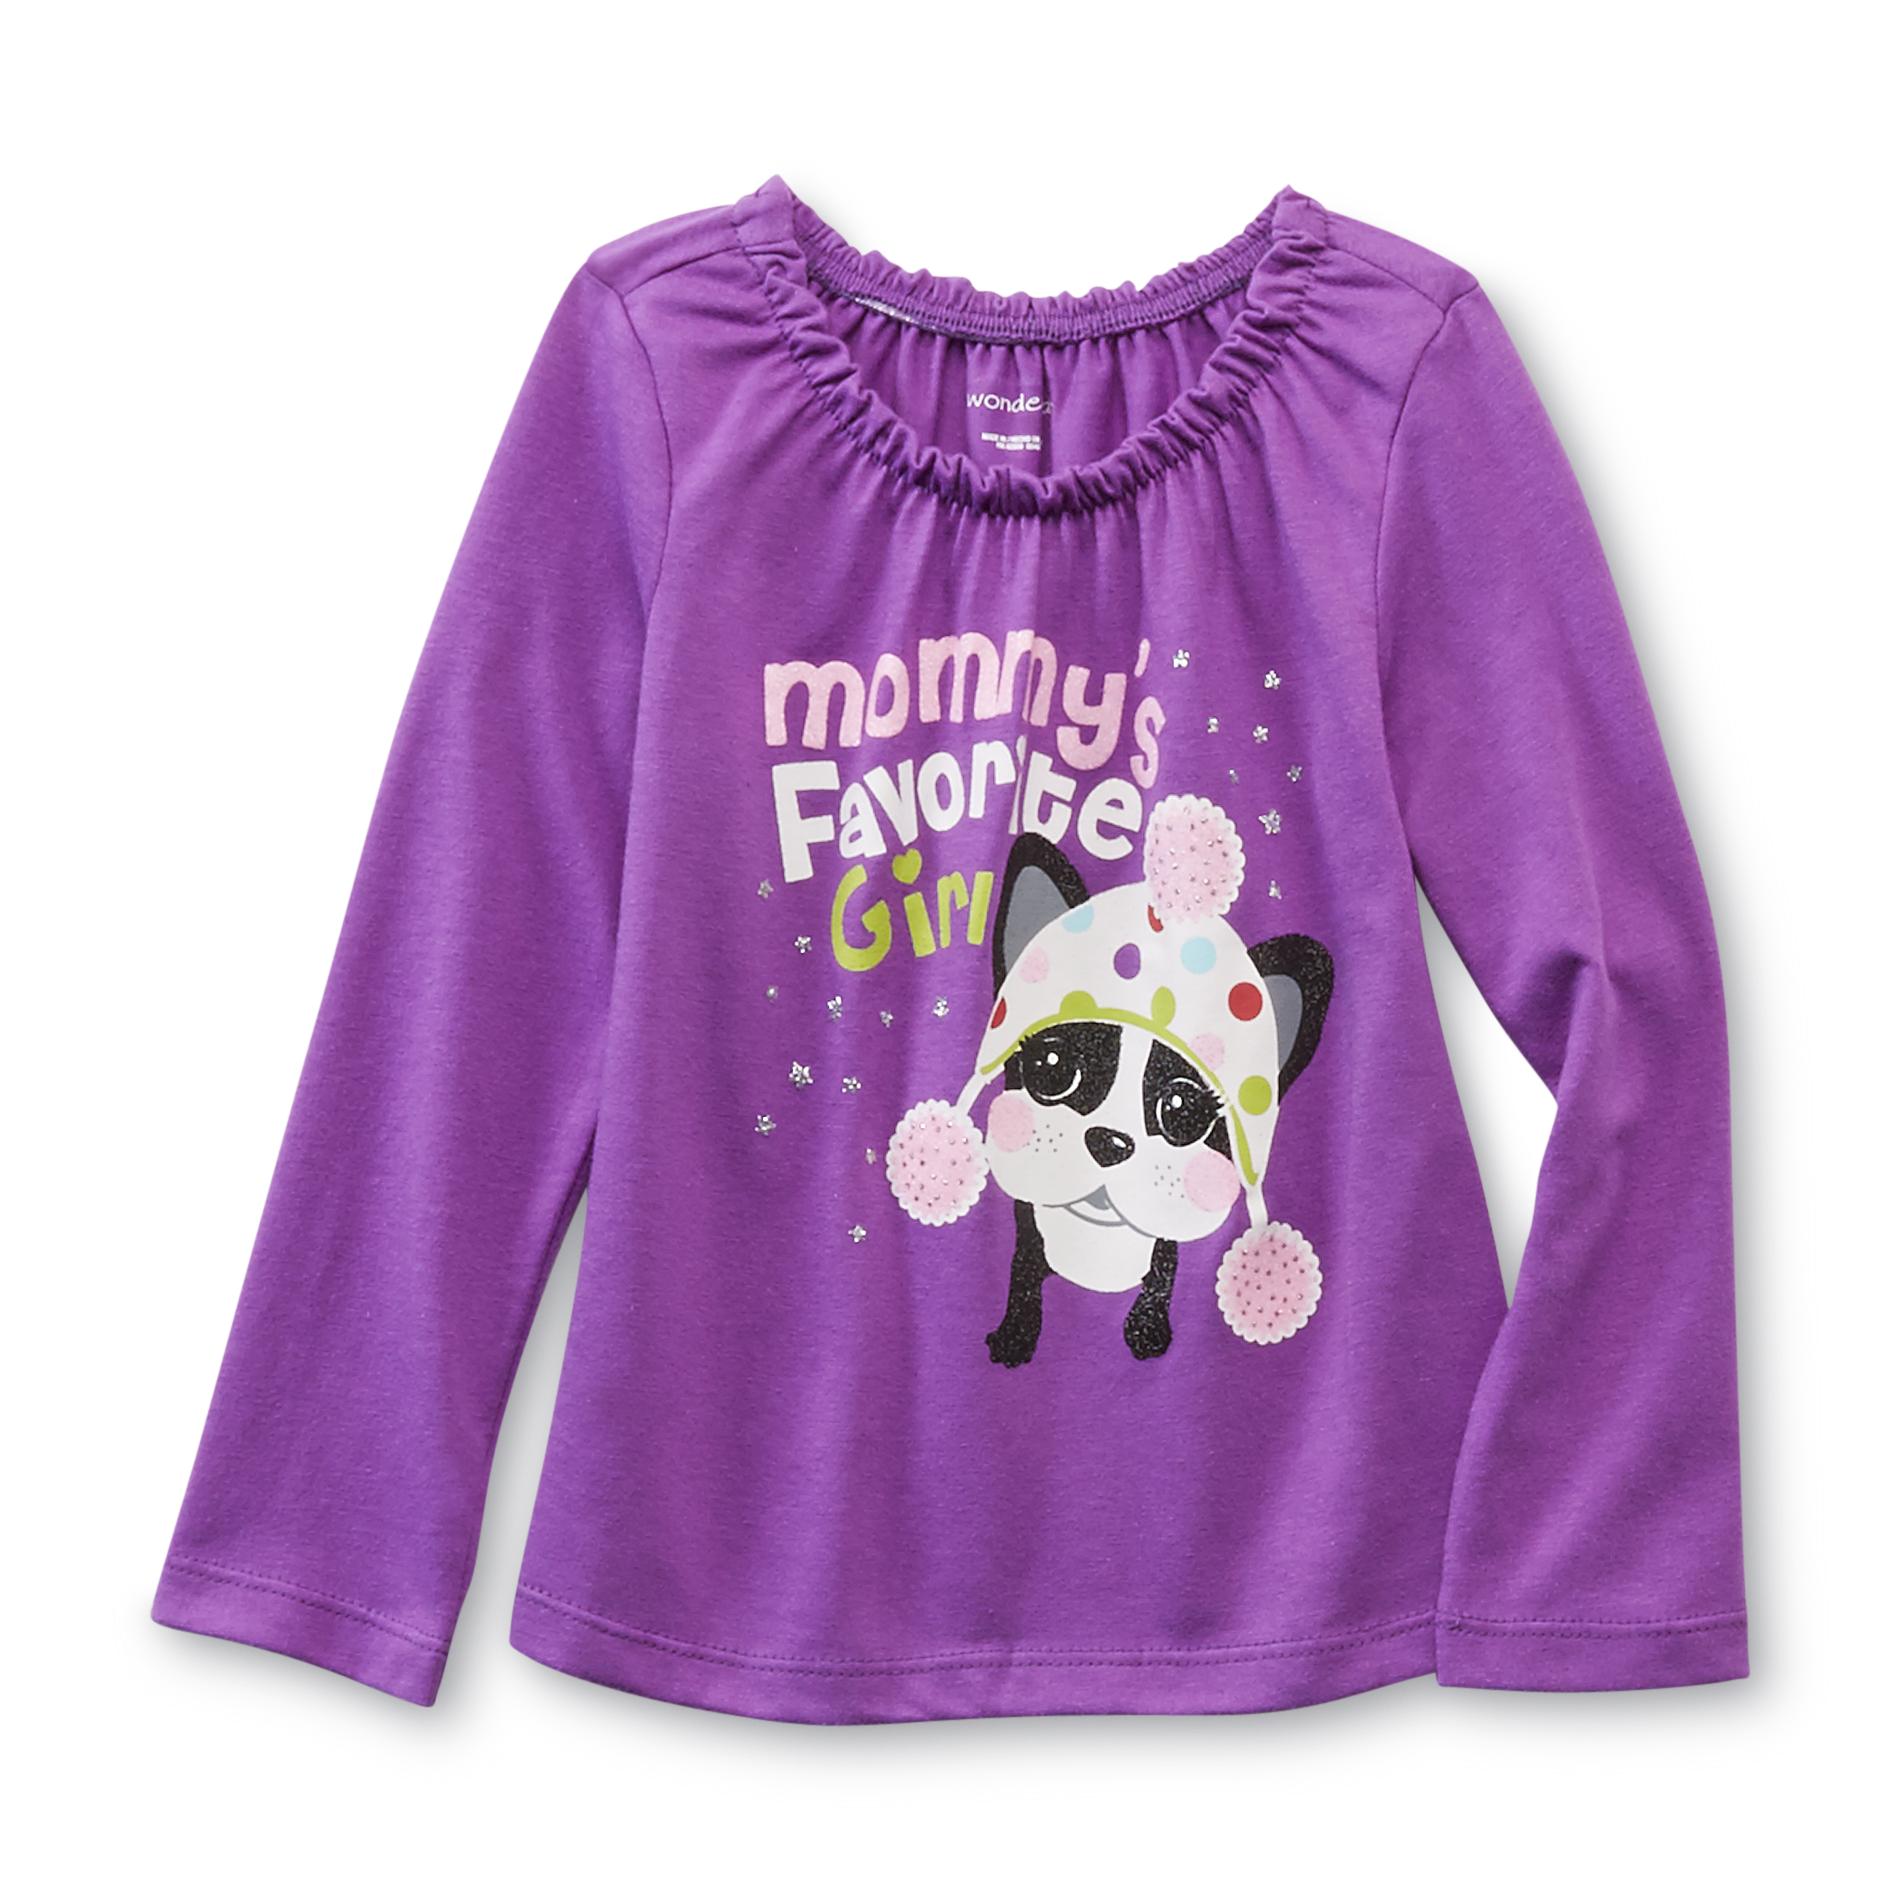 WonderKids Infant & Toddler Girl's T-Shirt - Mommy's Favorite Girl